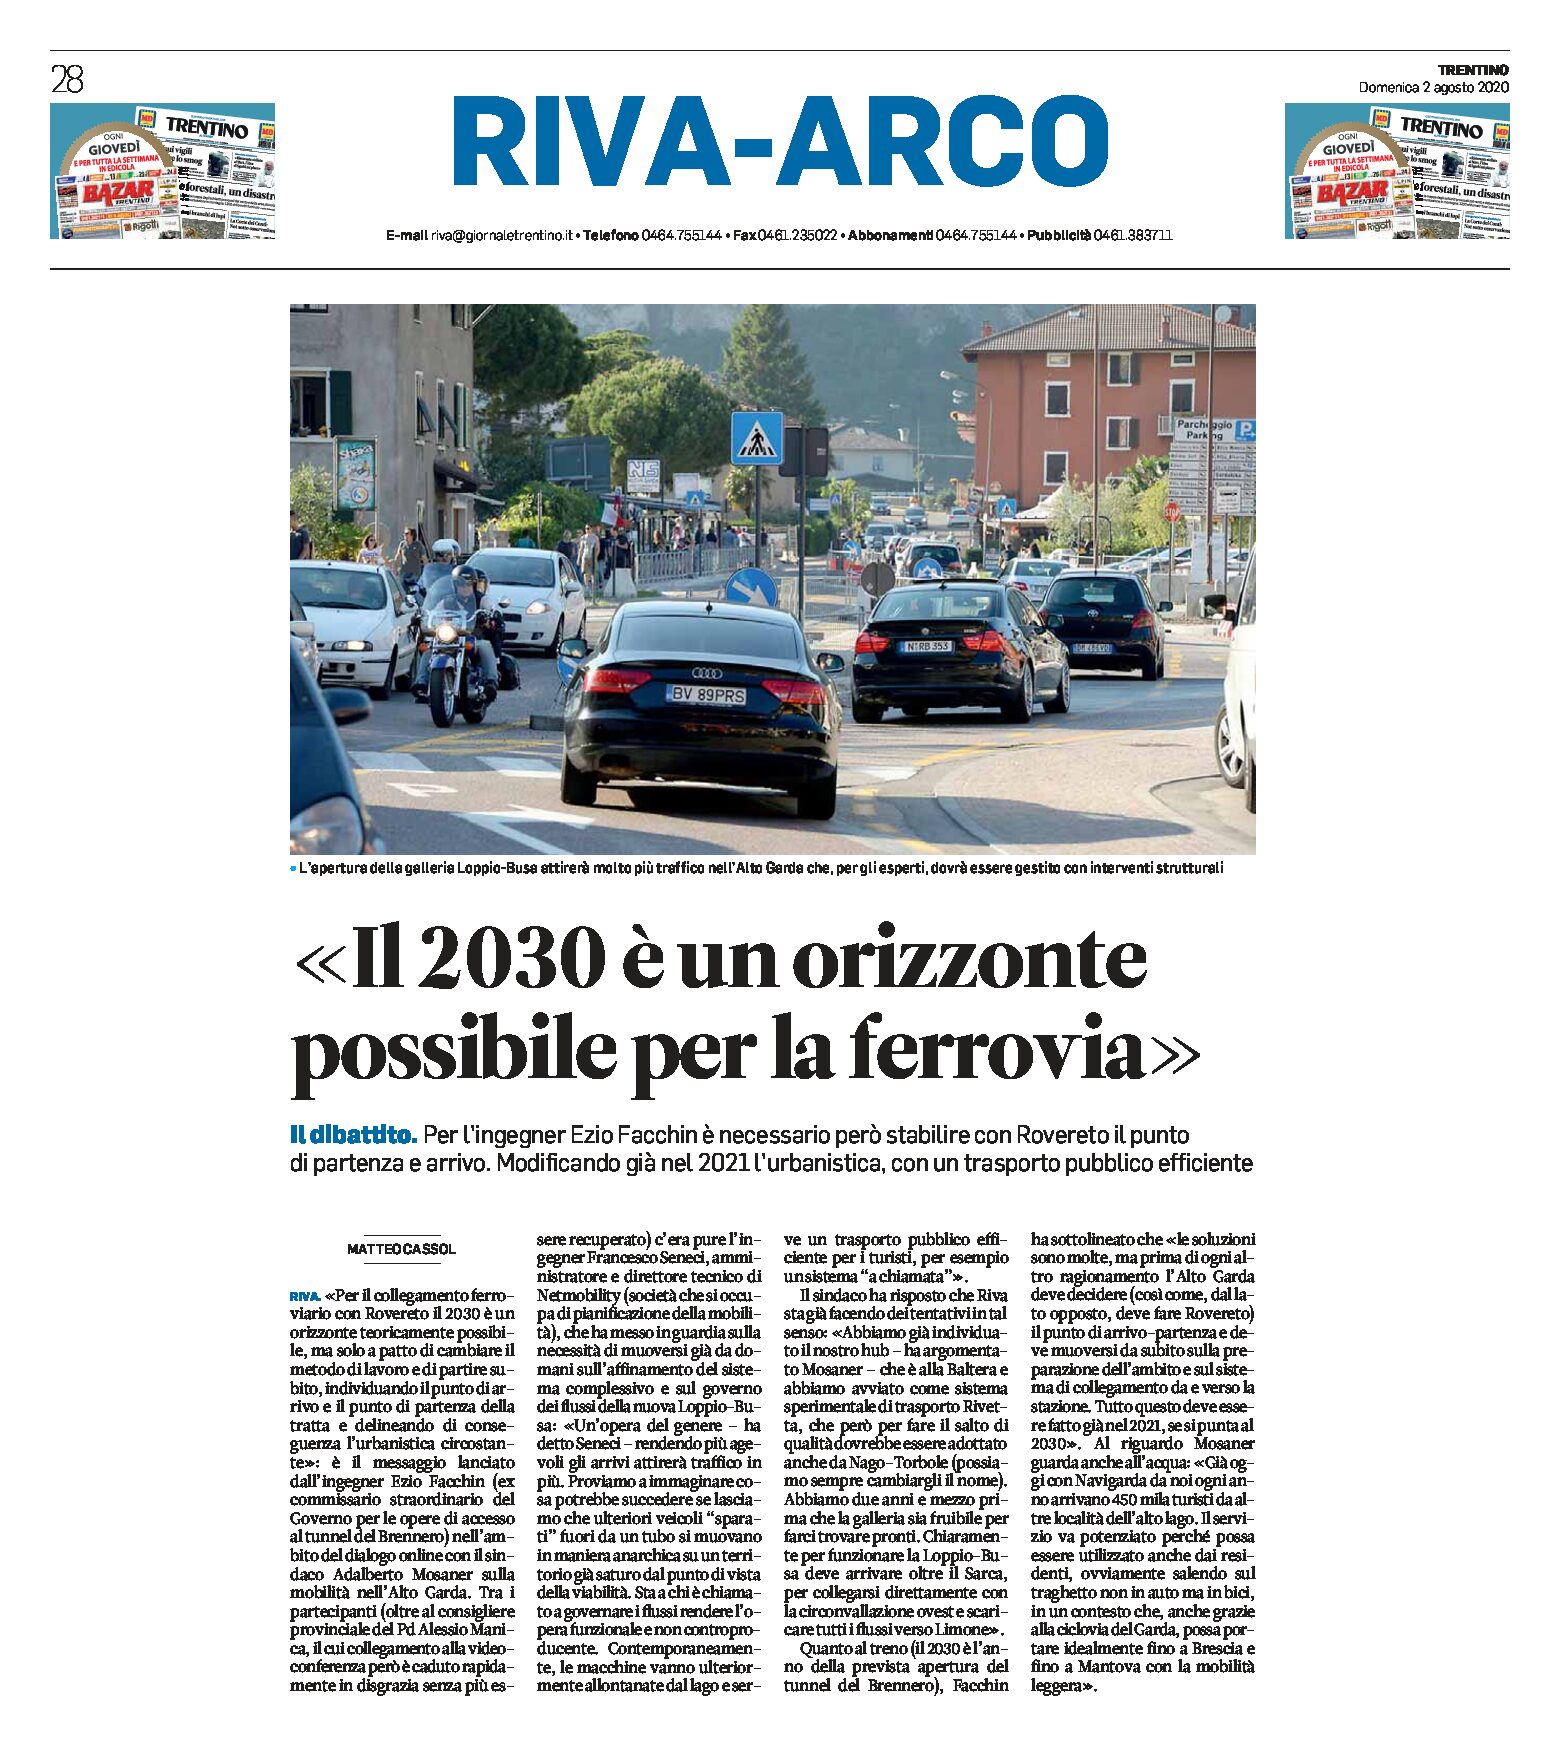 Ferrovia Rovereto-Riva: il 2030 è un orizzonte possibile